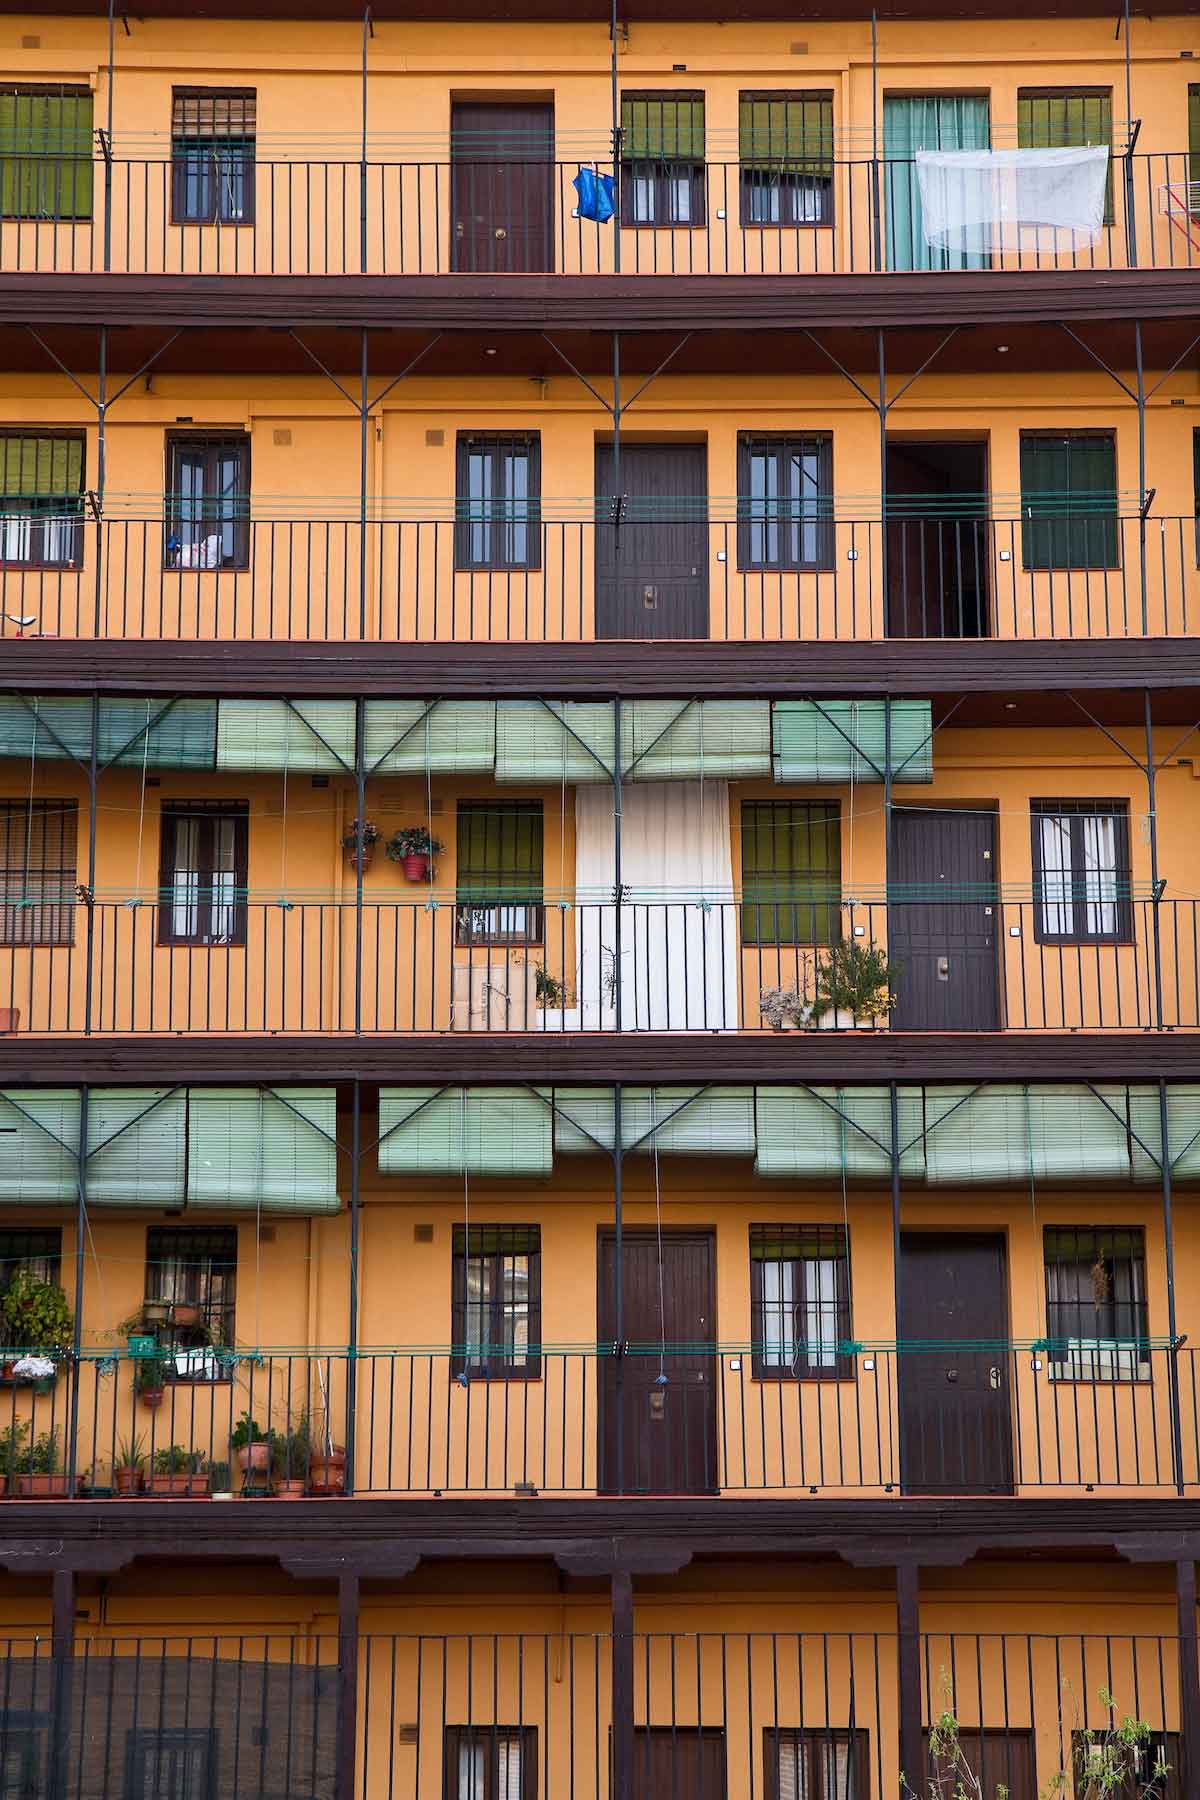 Vista exterior de cinco plantas de un bloque de apartamentos con balcones y persianas verdes.